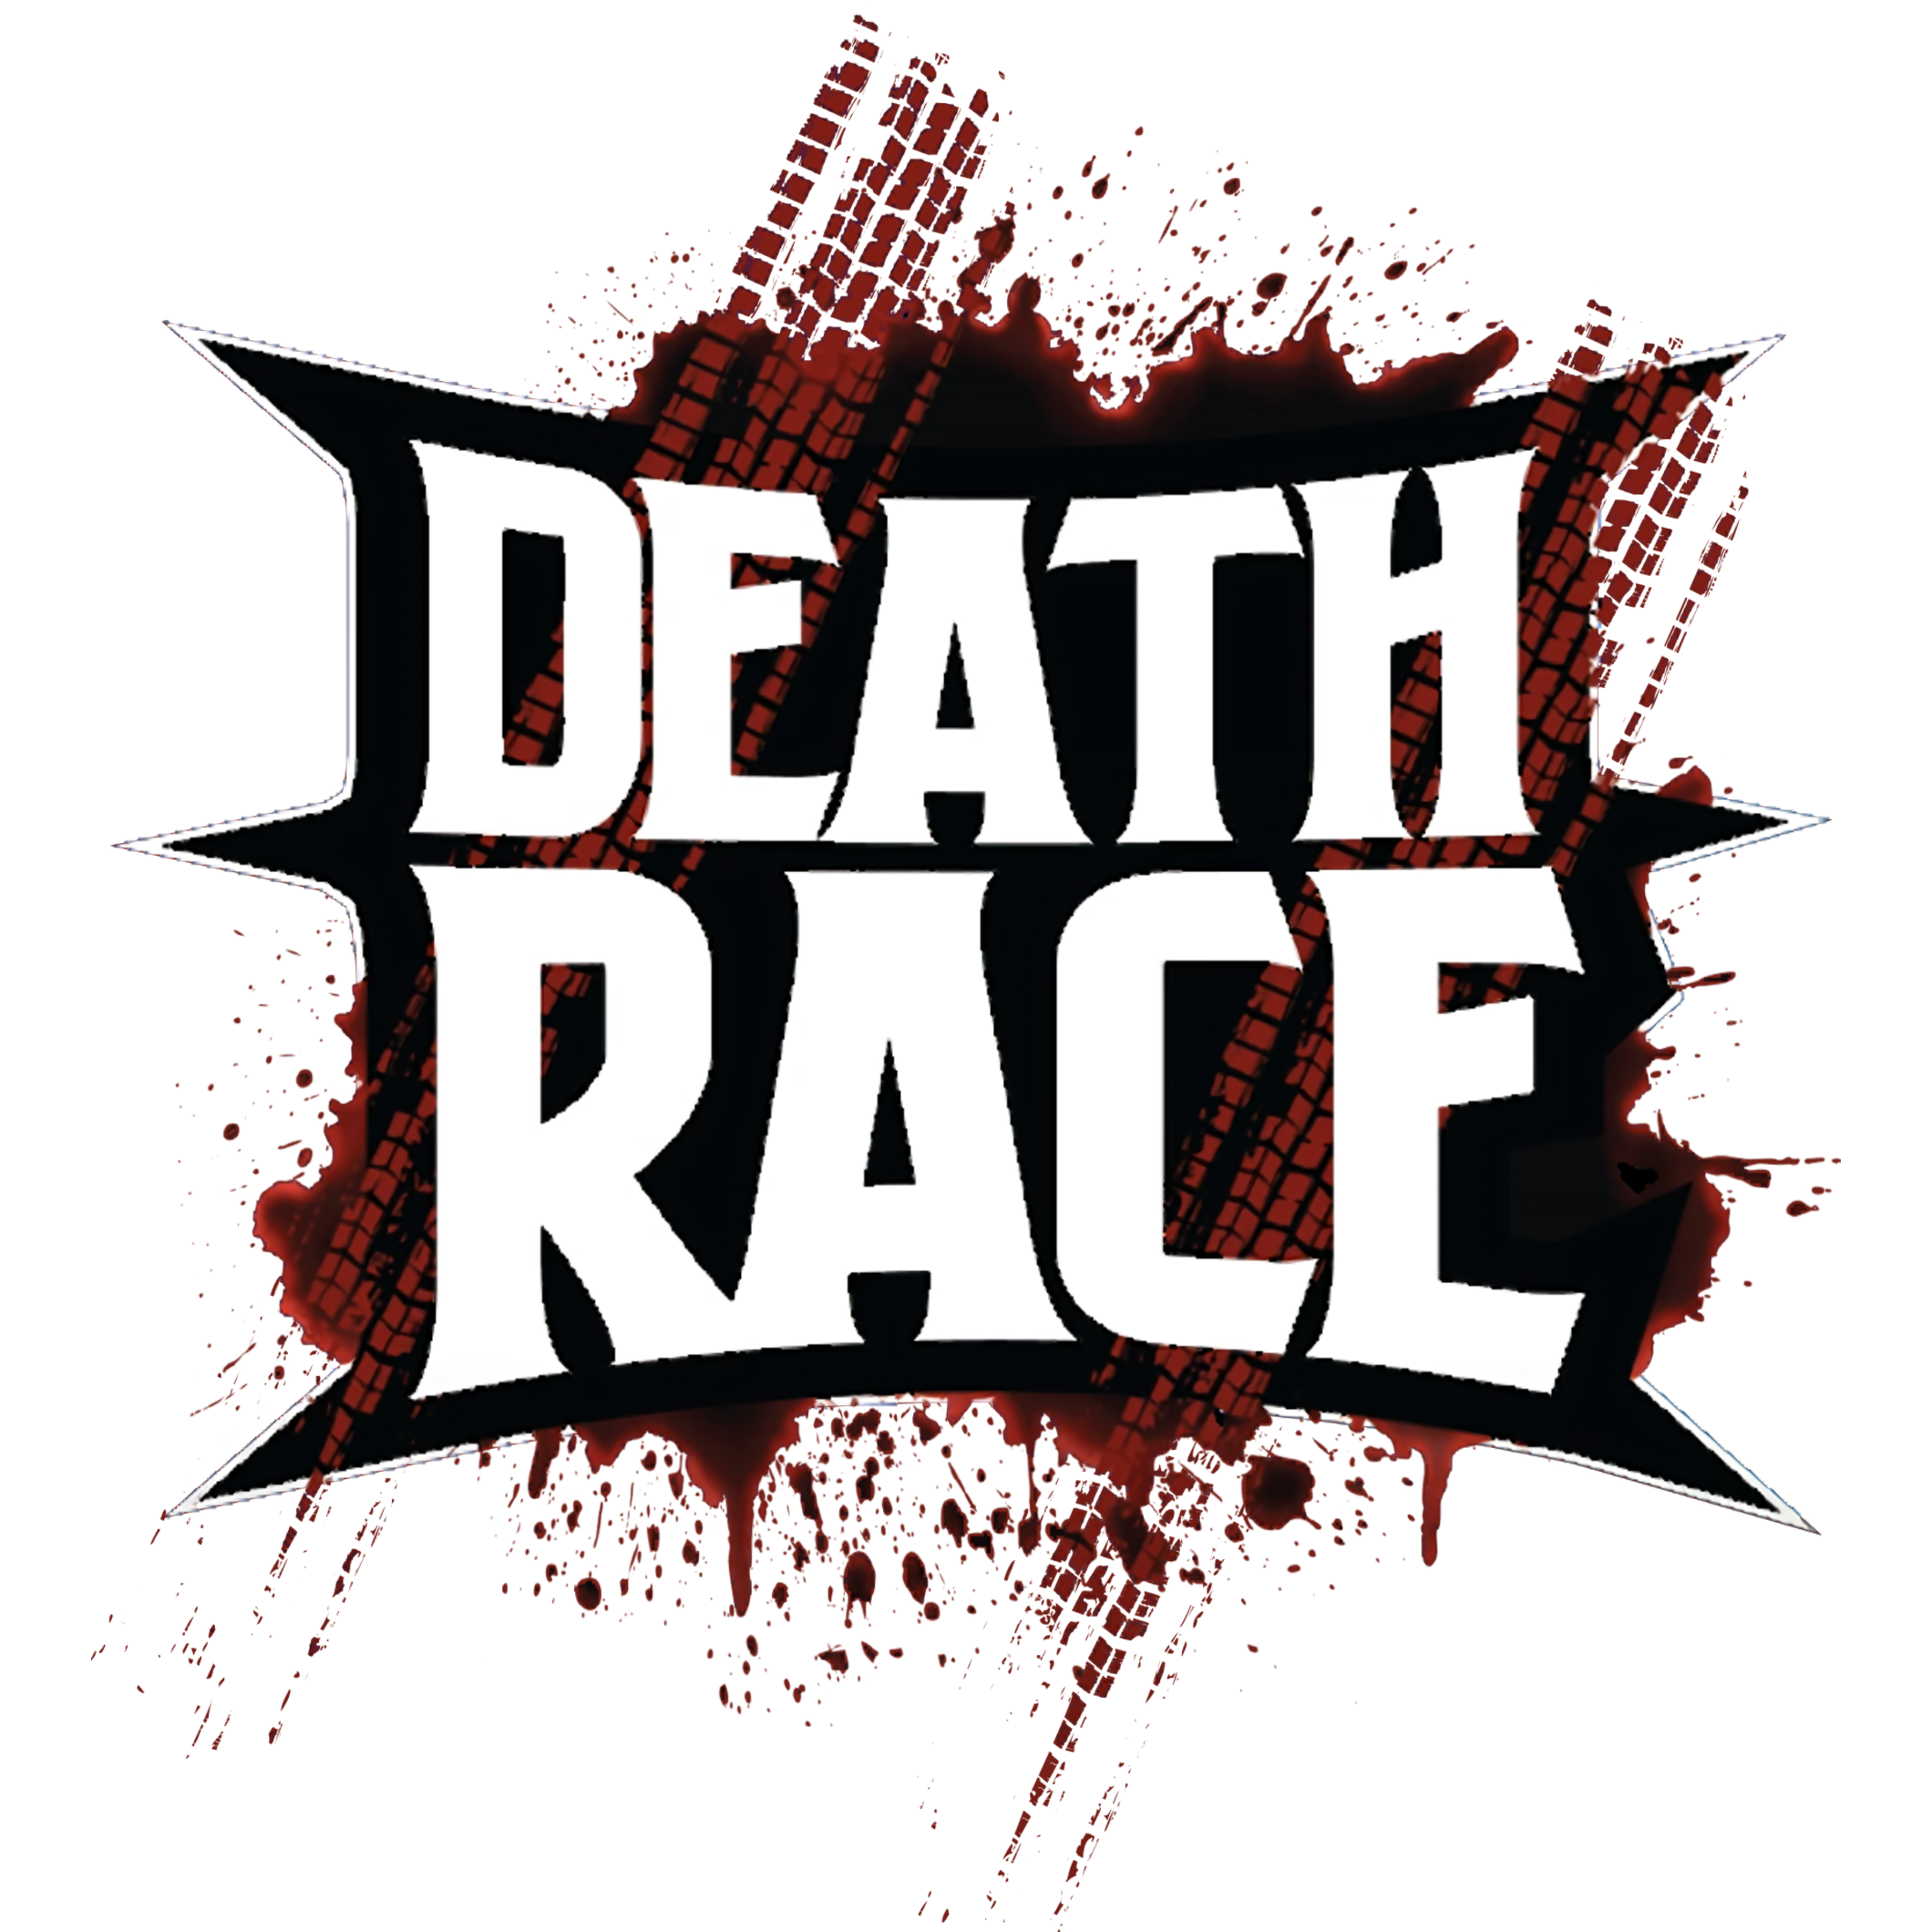 death race